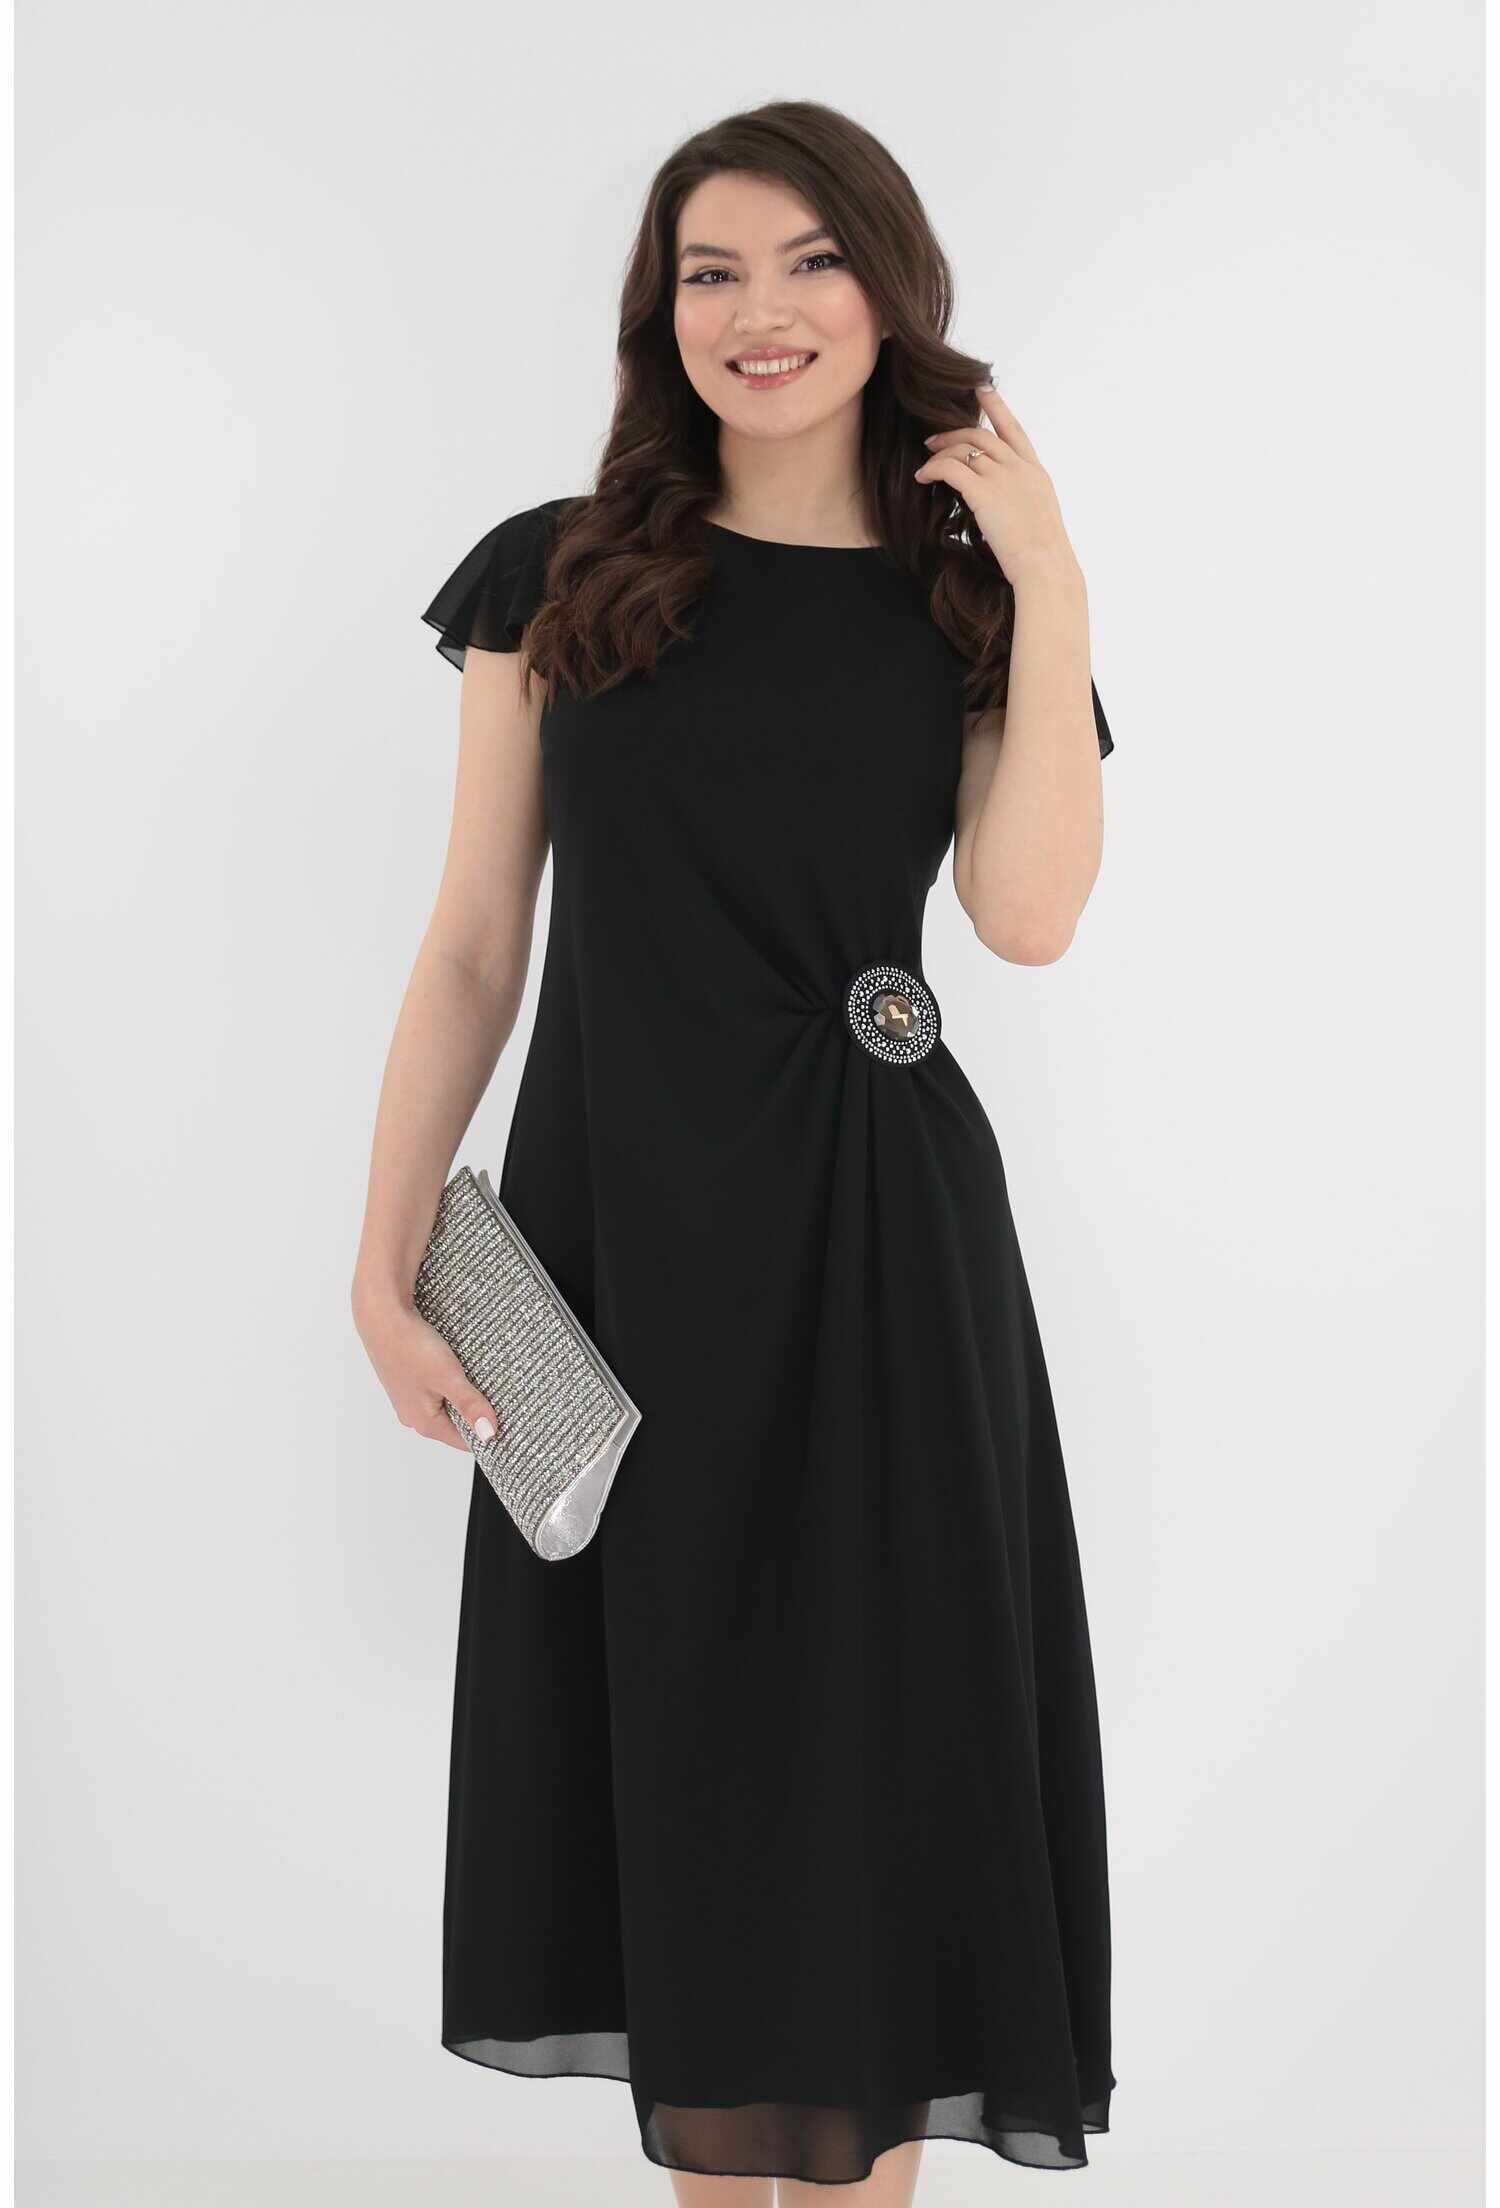 Rochie eleganta din voal negru cu brosa in talie